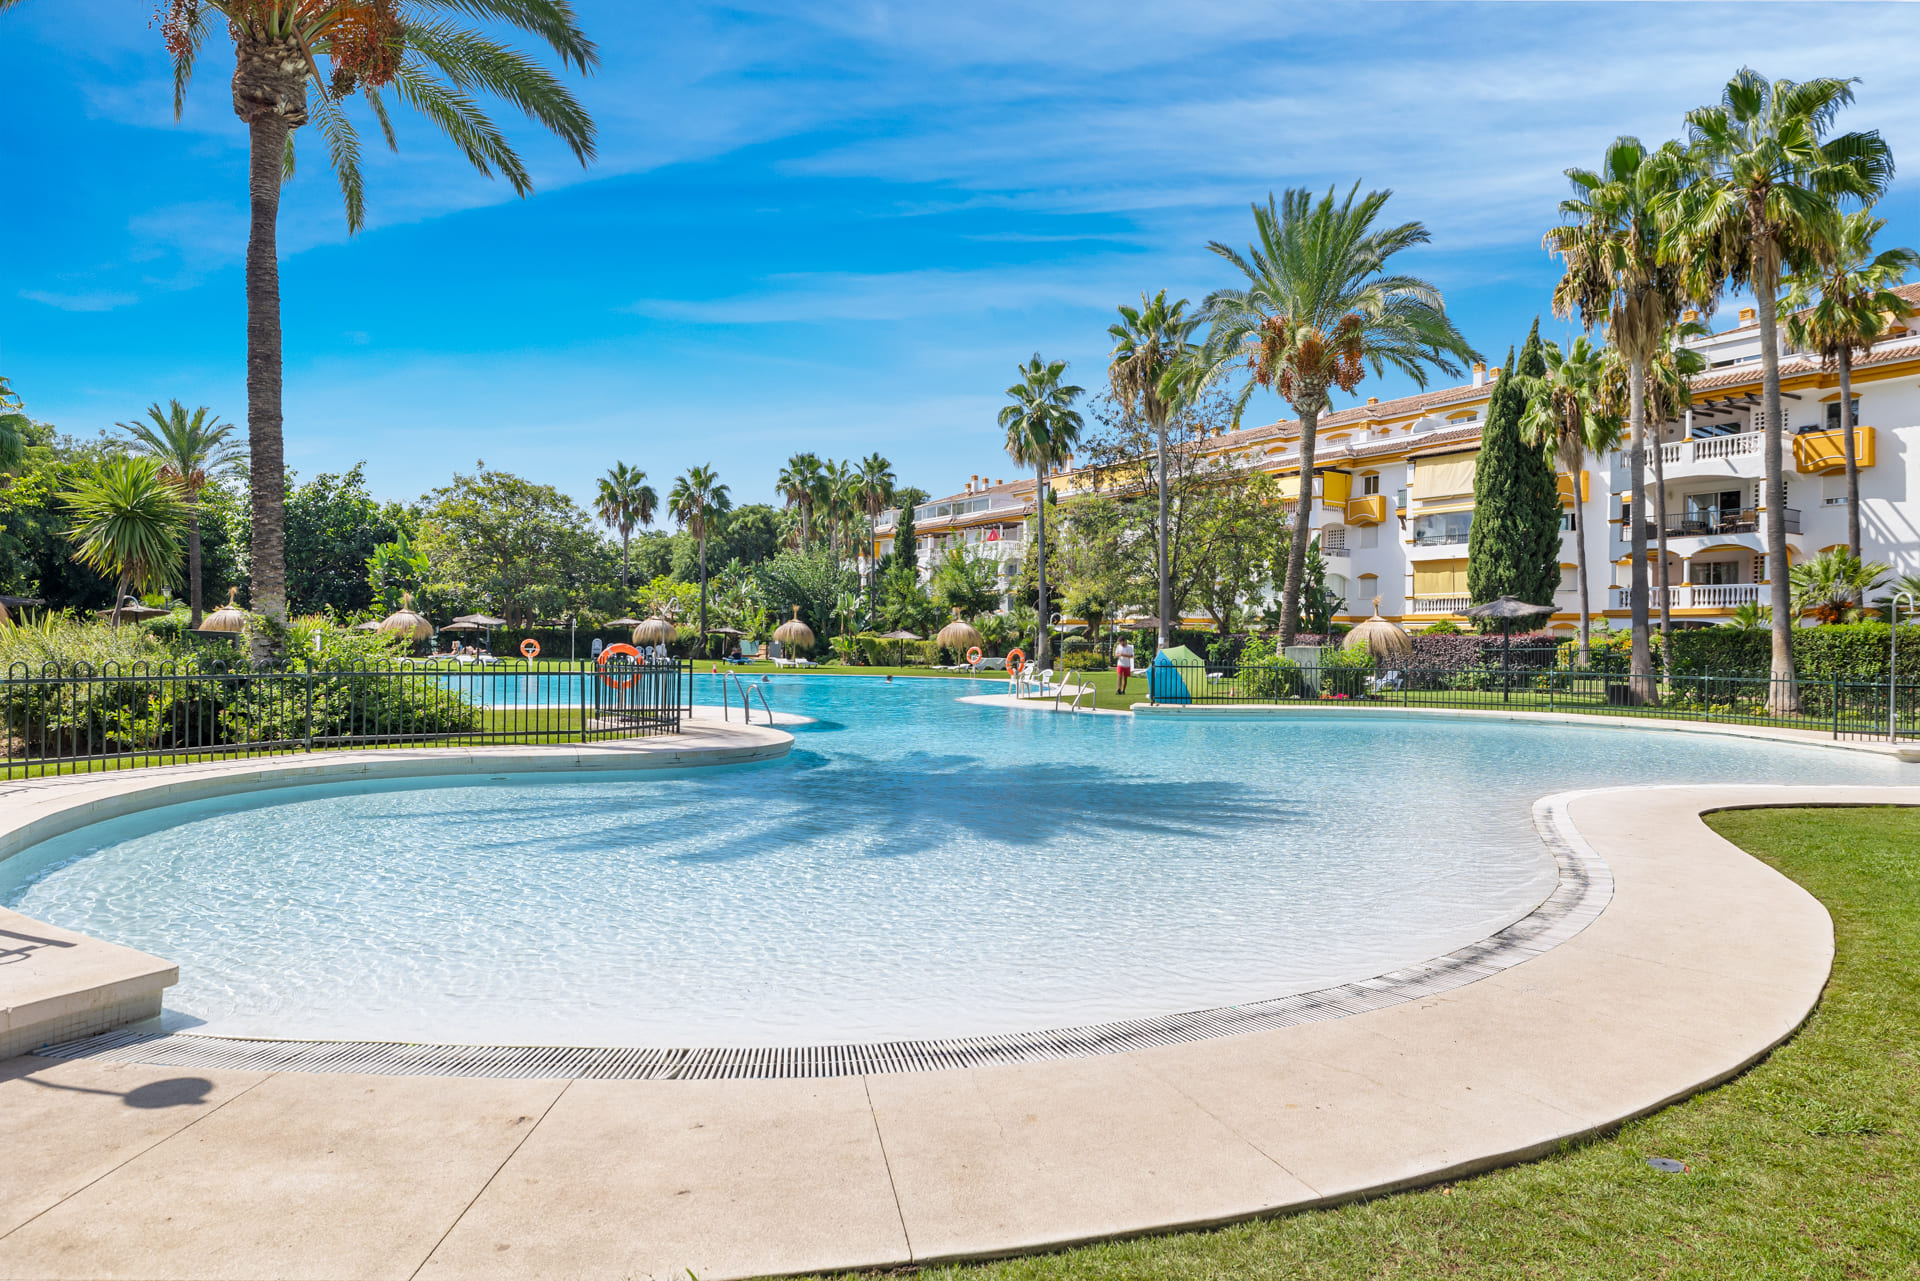 ViVi Real Estate: Espectacular Villa en venta en Marbella con vistas panorámicas al mar.